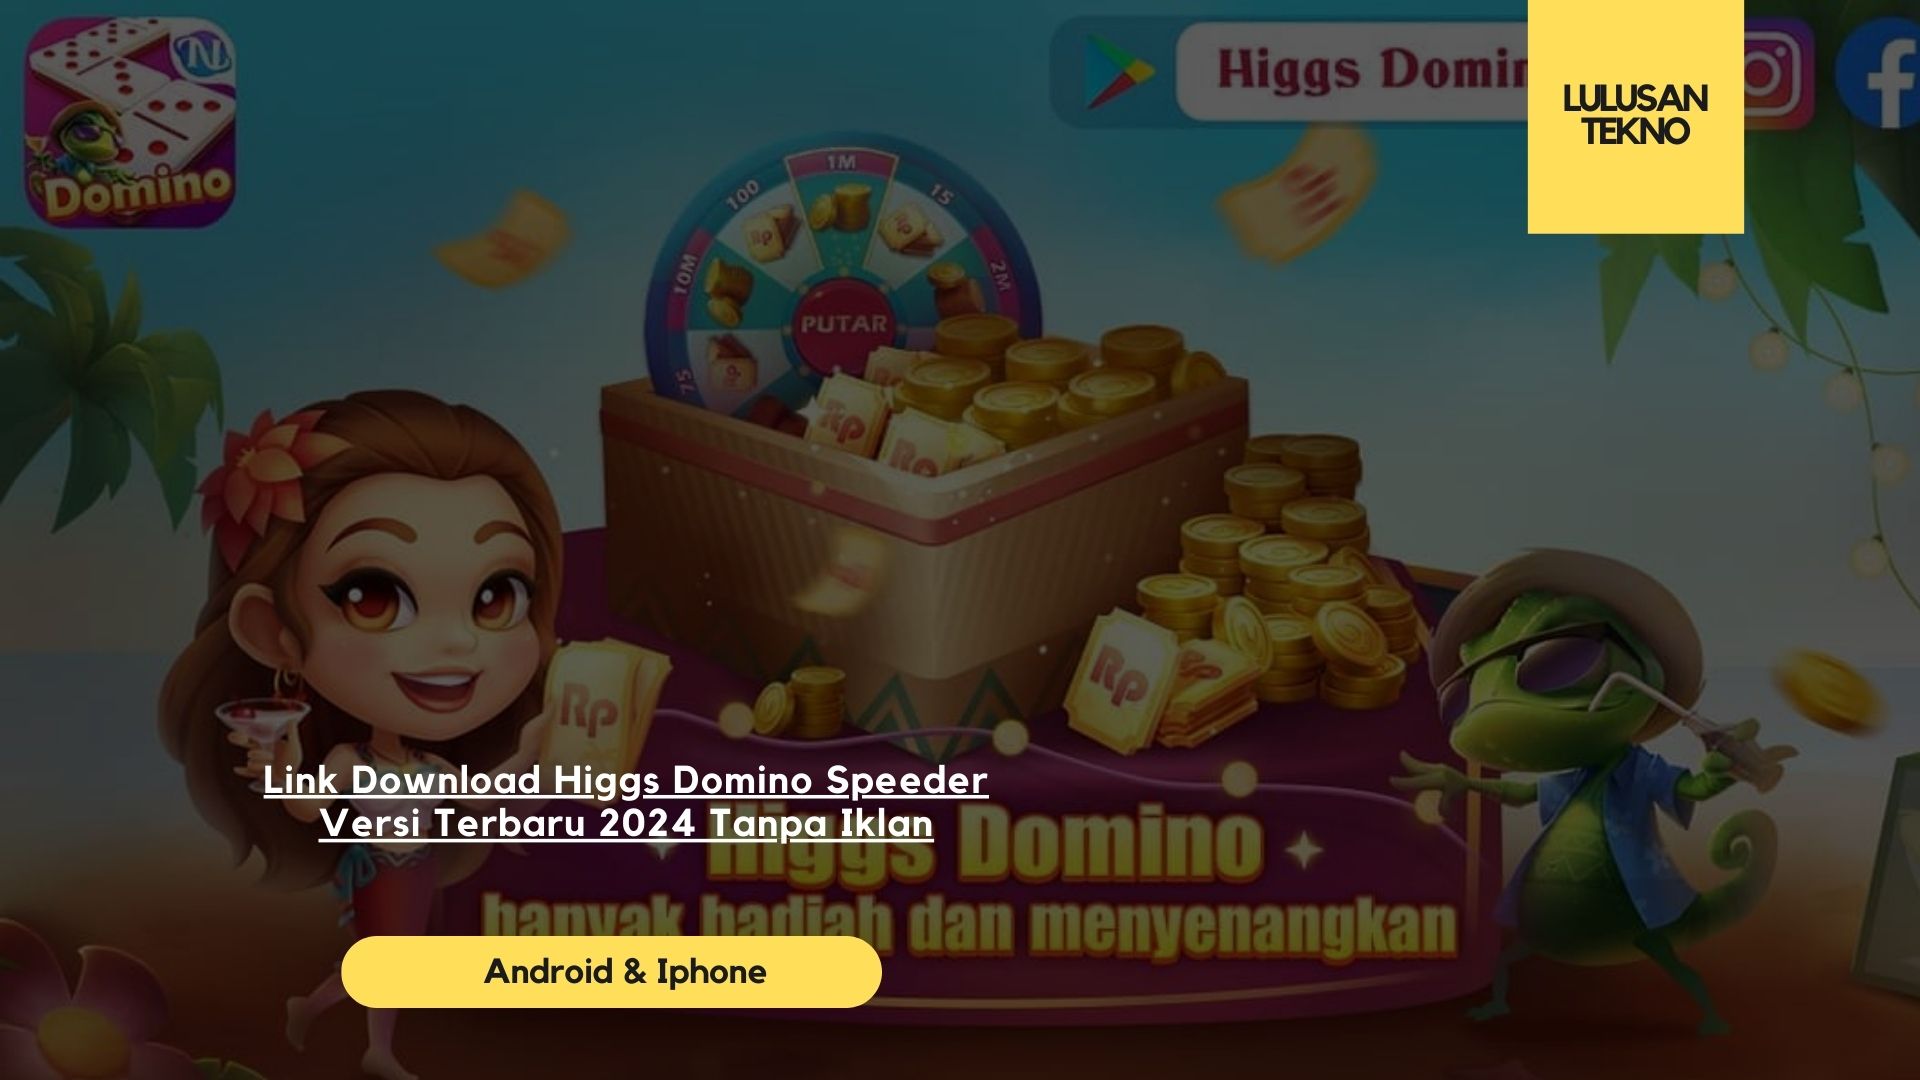 Link Download Higgs Domino Speeder Versi Terbaru 2024 Tanpa Iklan